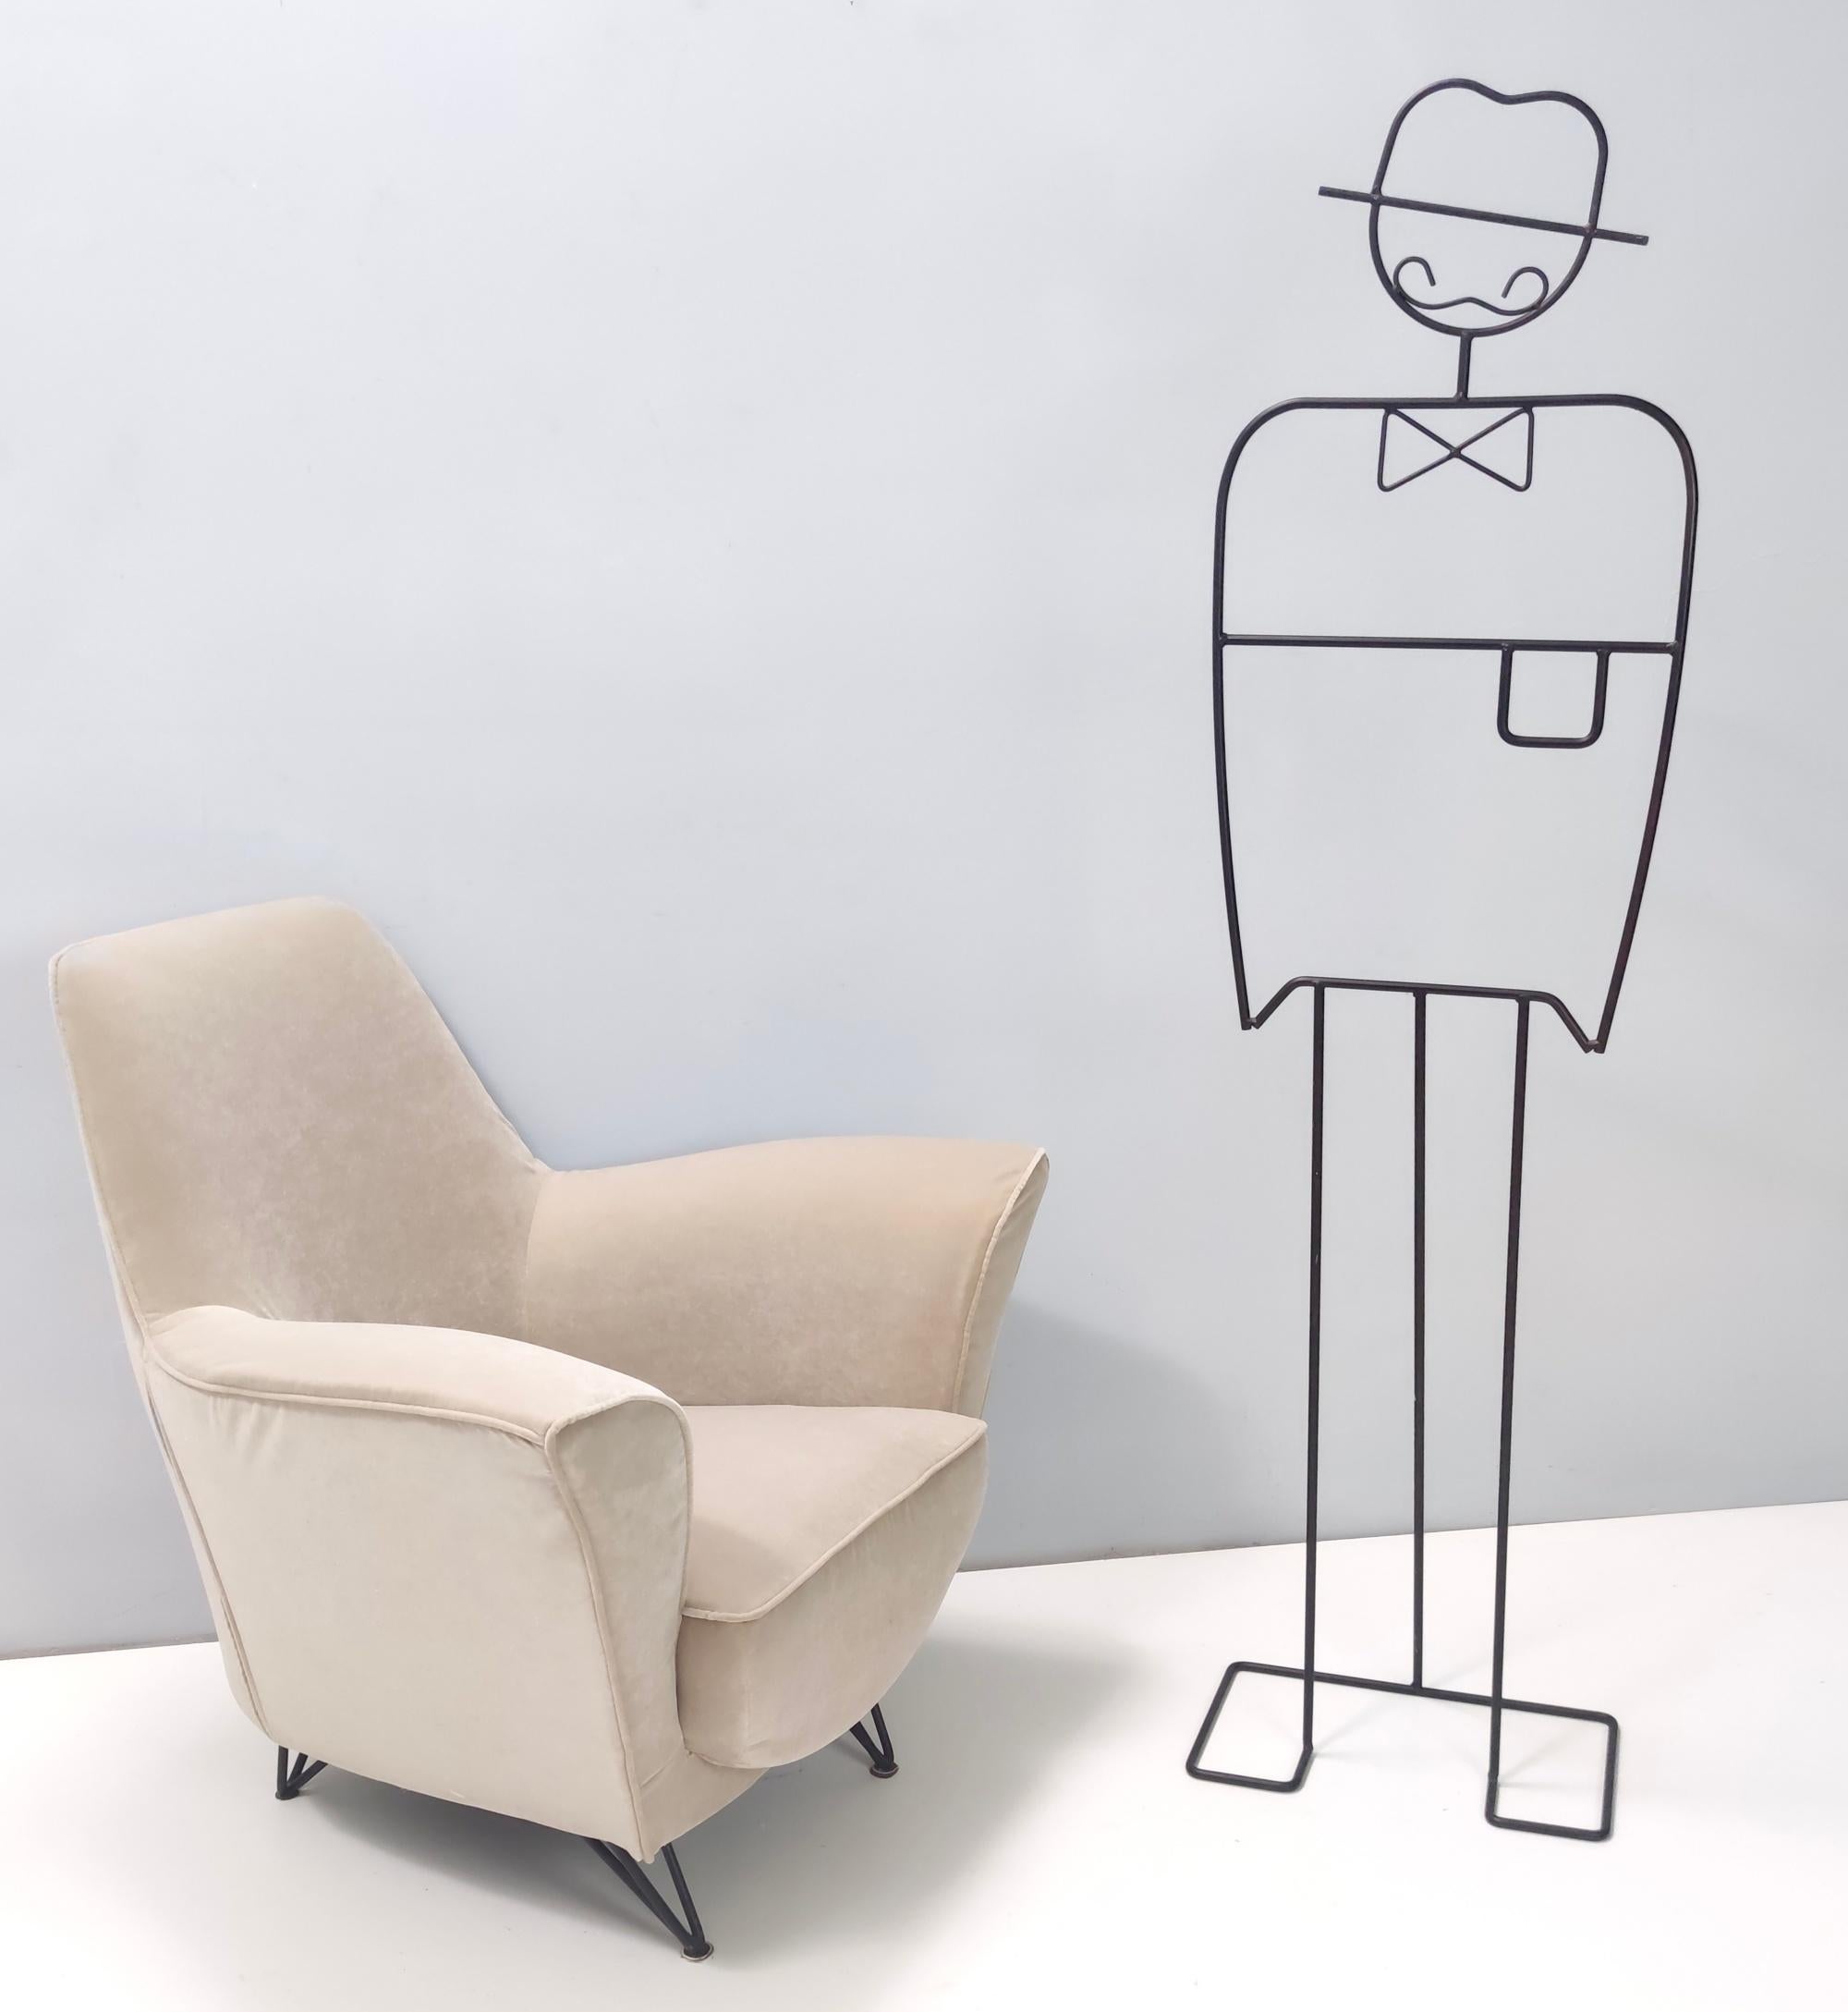 Hergestellt in Italien, 1950er Jahre. 
Dieser Sessel ist mit einem neuen beigen Stoffbezug und lackierten Metallfüßen ausgestattet. 
Diese Sitzgelegenheit ist äußerst bequem und anschmiegsam.
Es ist Vintage, daher kann es leichte Gebrauchsspuren